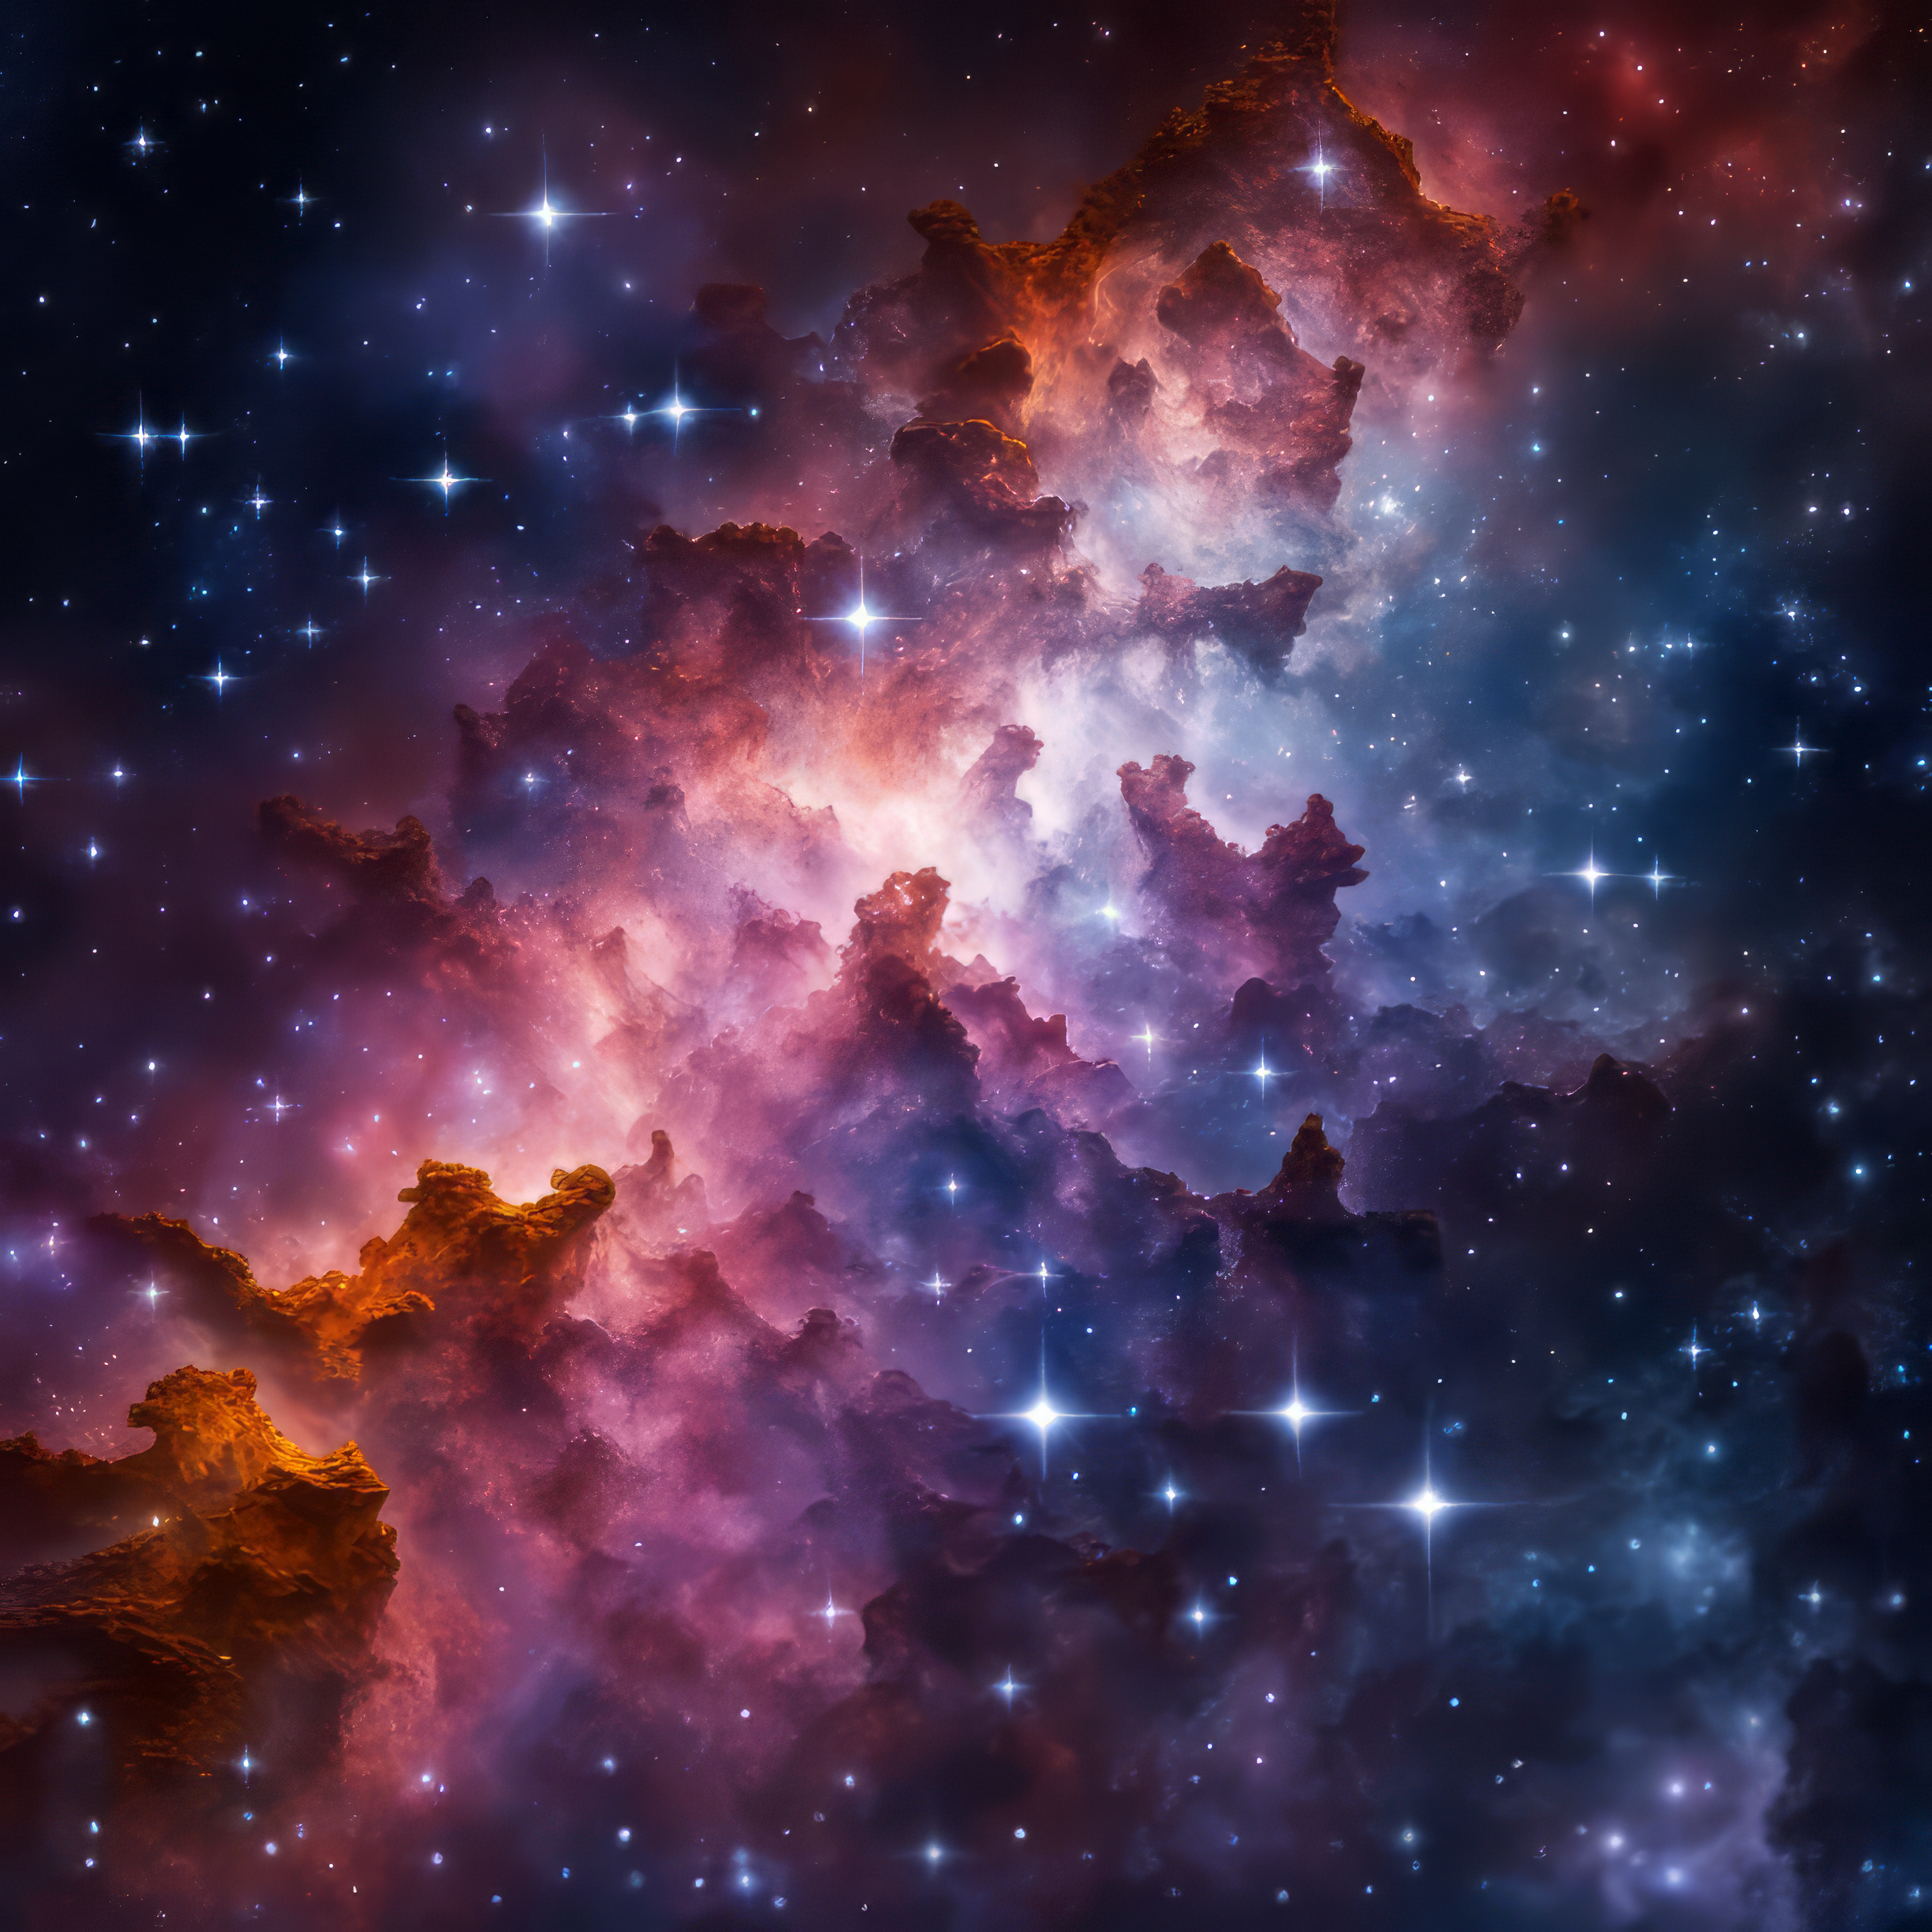 かっこいい銀河の星々の美しいカラフルな癒しの景色の写真風の無料背景画像素材